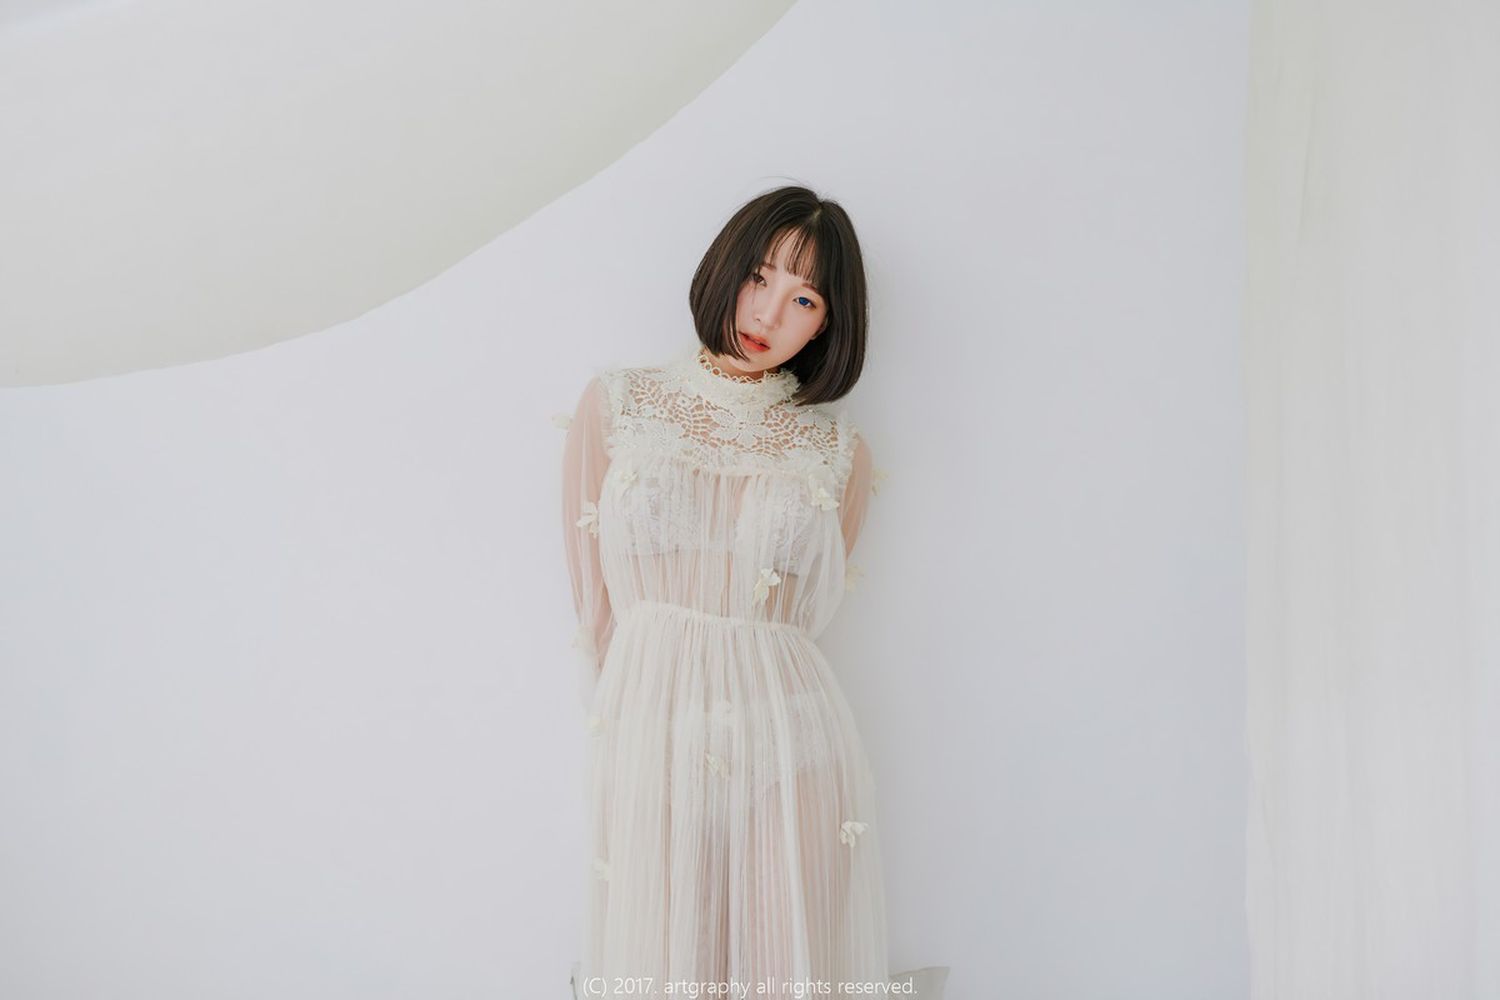 美女模特姜仁卿白色缕空吊裙秀完美身材私房写真